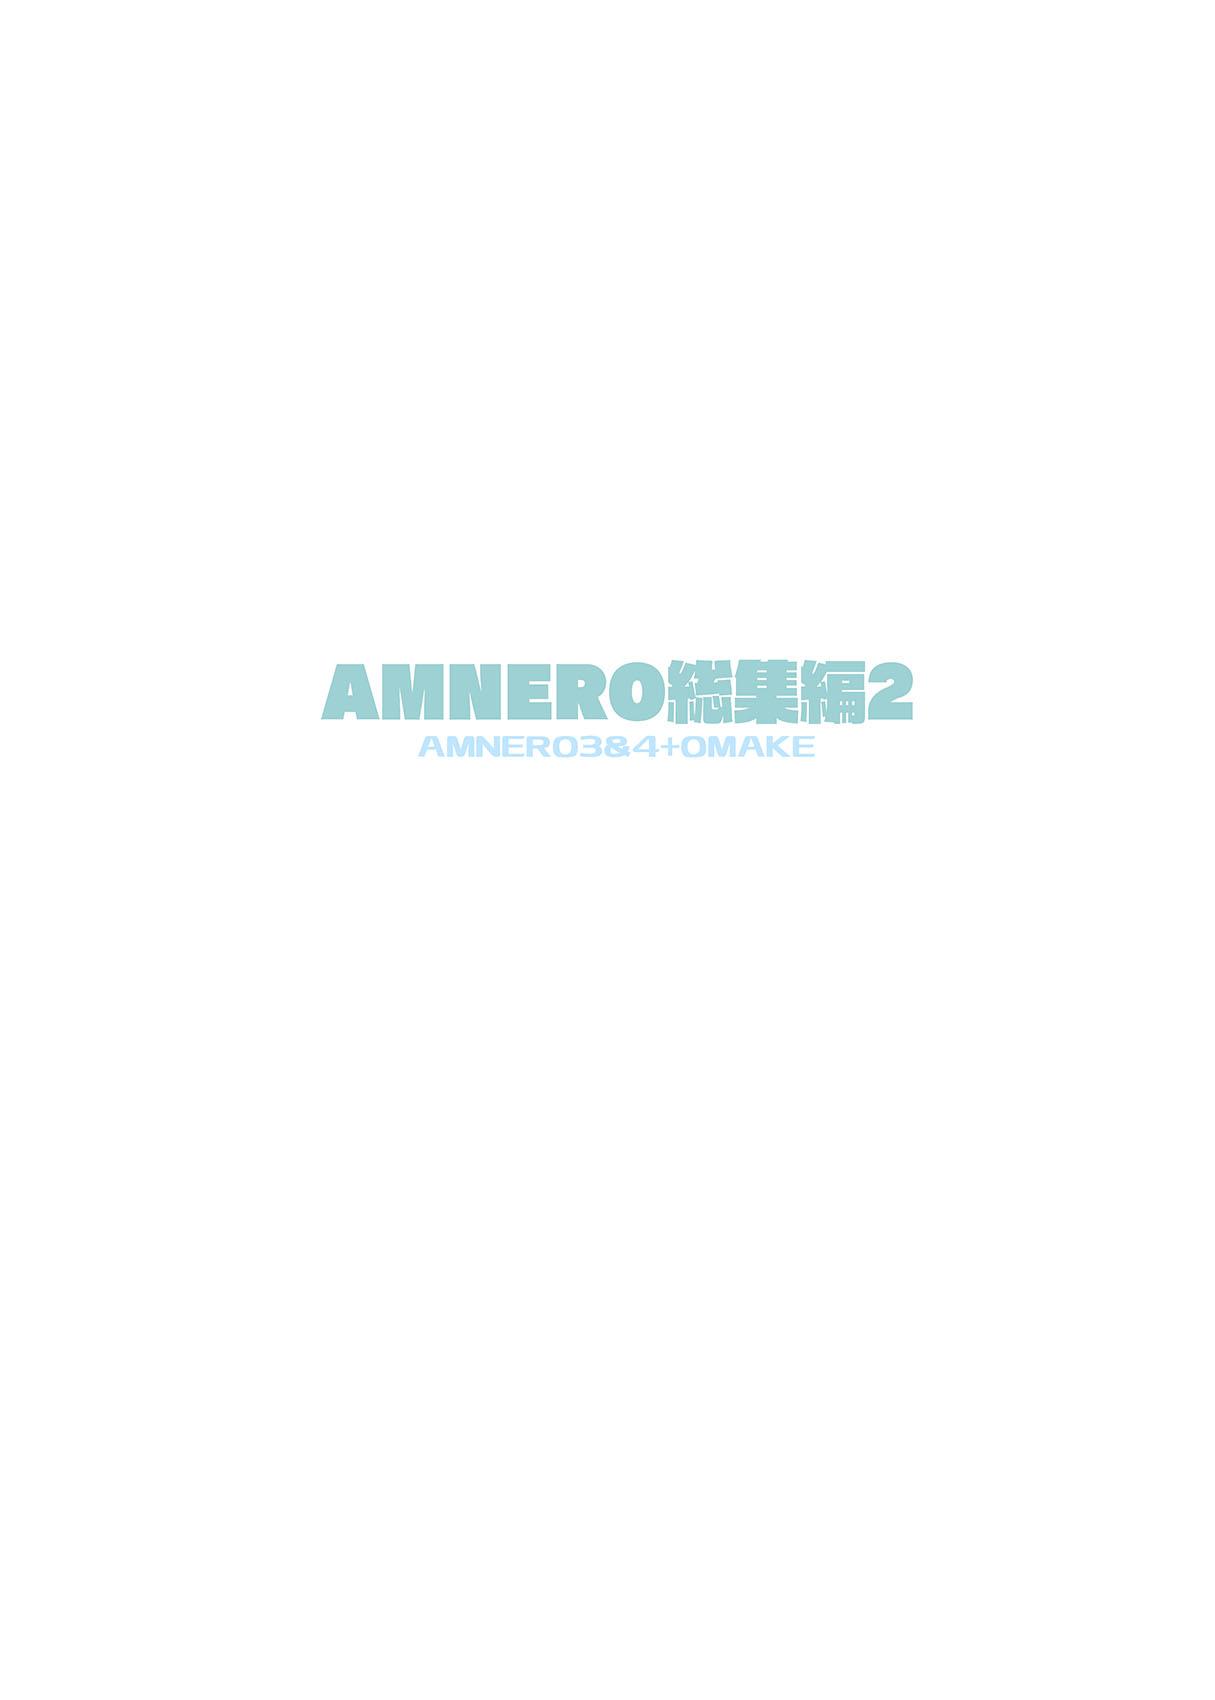 AMNERO Soushuuhen 2 - AMNERO3&4+OMAKE 126